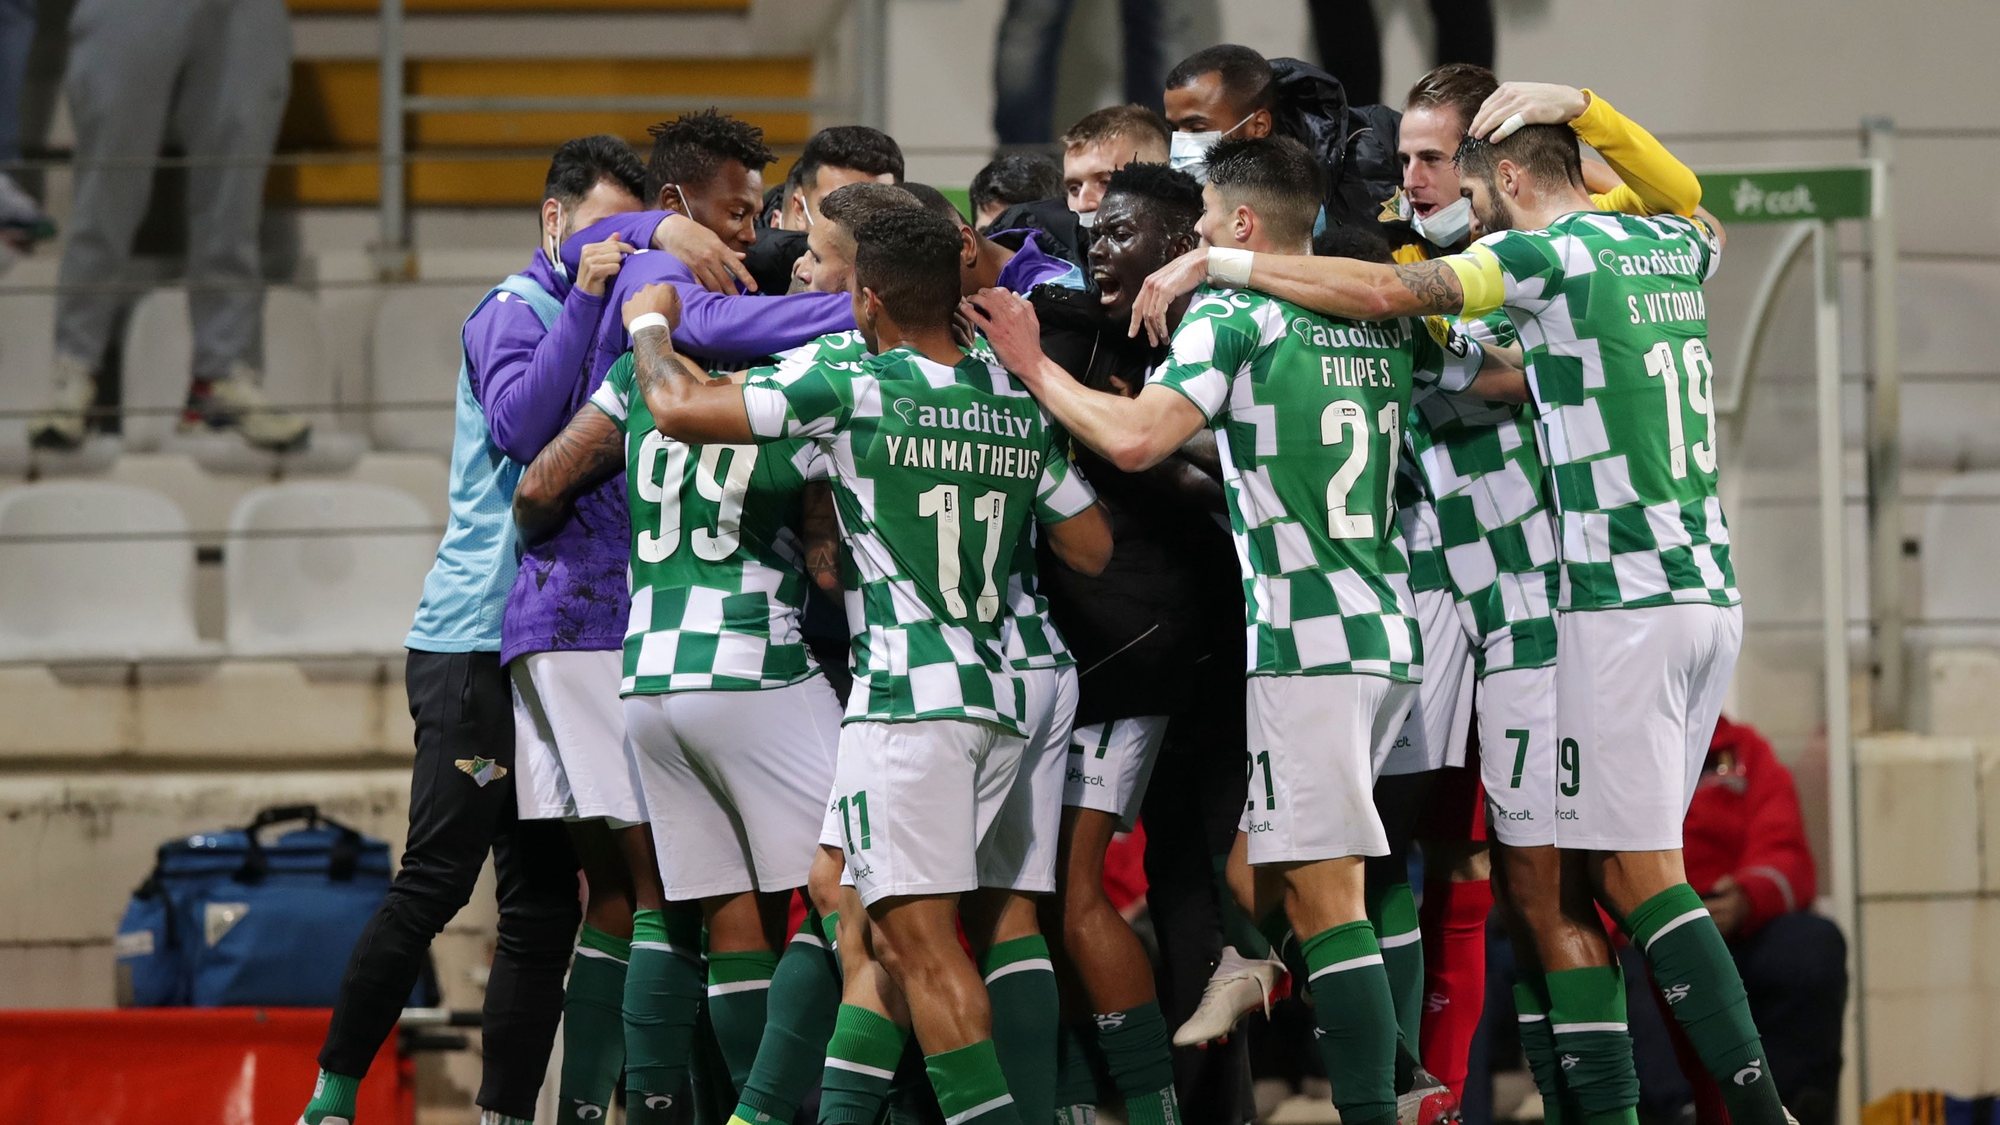 Os jogadores do Moreirense festejam após marcarem um golo contra o Estoril Praia durante o jogo da 16.ª jornada da Primeira Liga de futebol